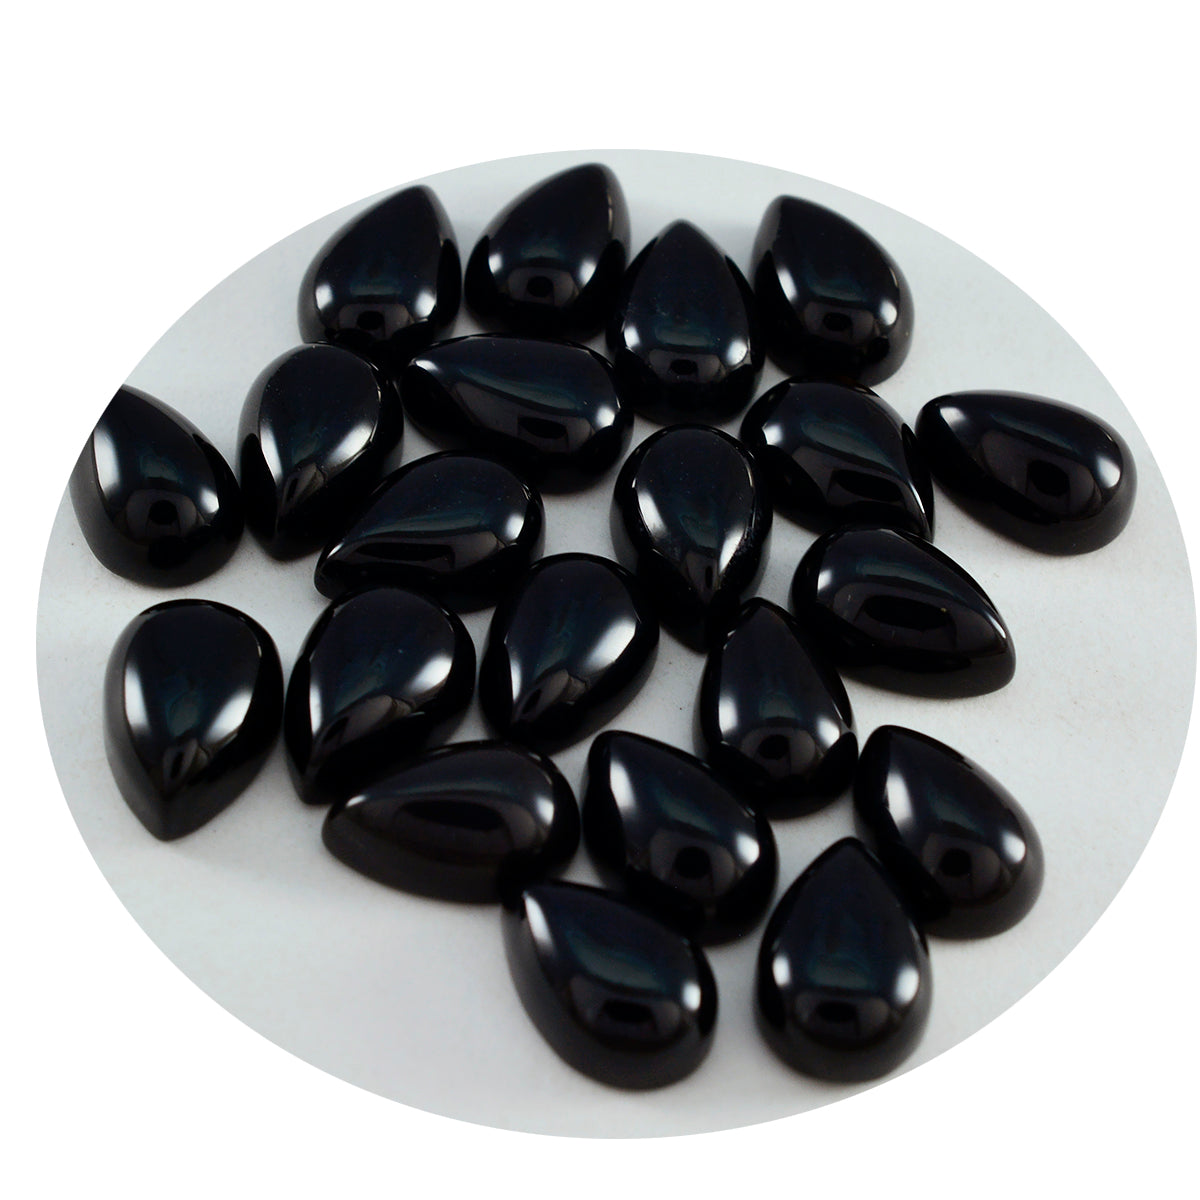 Riyogems 1 Stück schwarzer Onyx-Cabochon, 5 x 7 mm, Birnenform, toller hochwertiger loser Stein